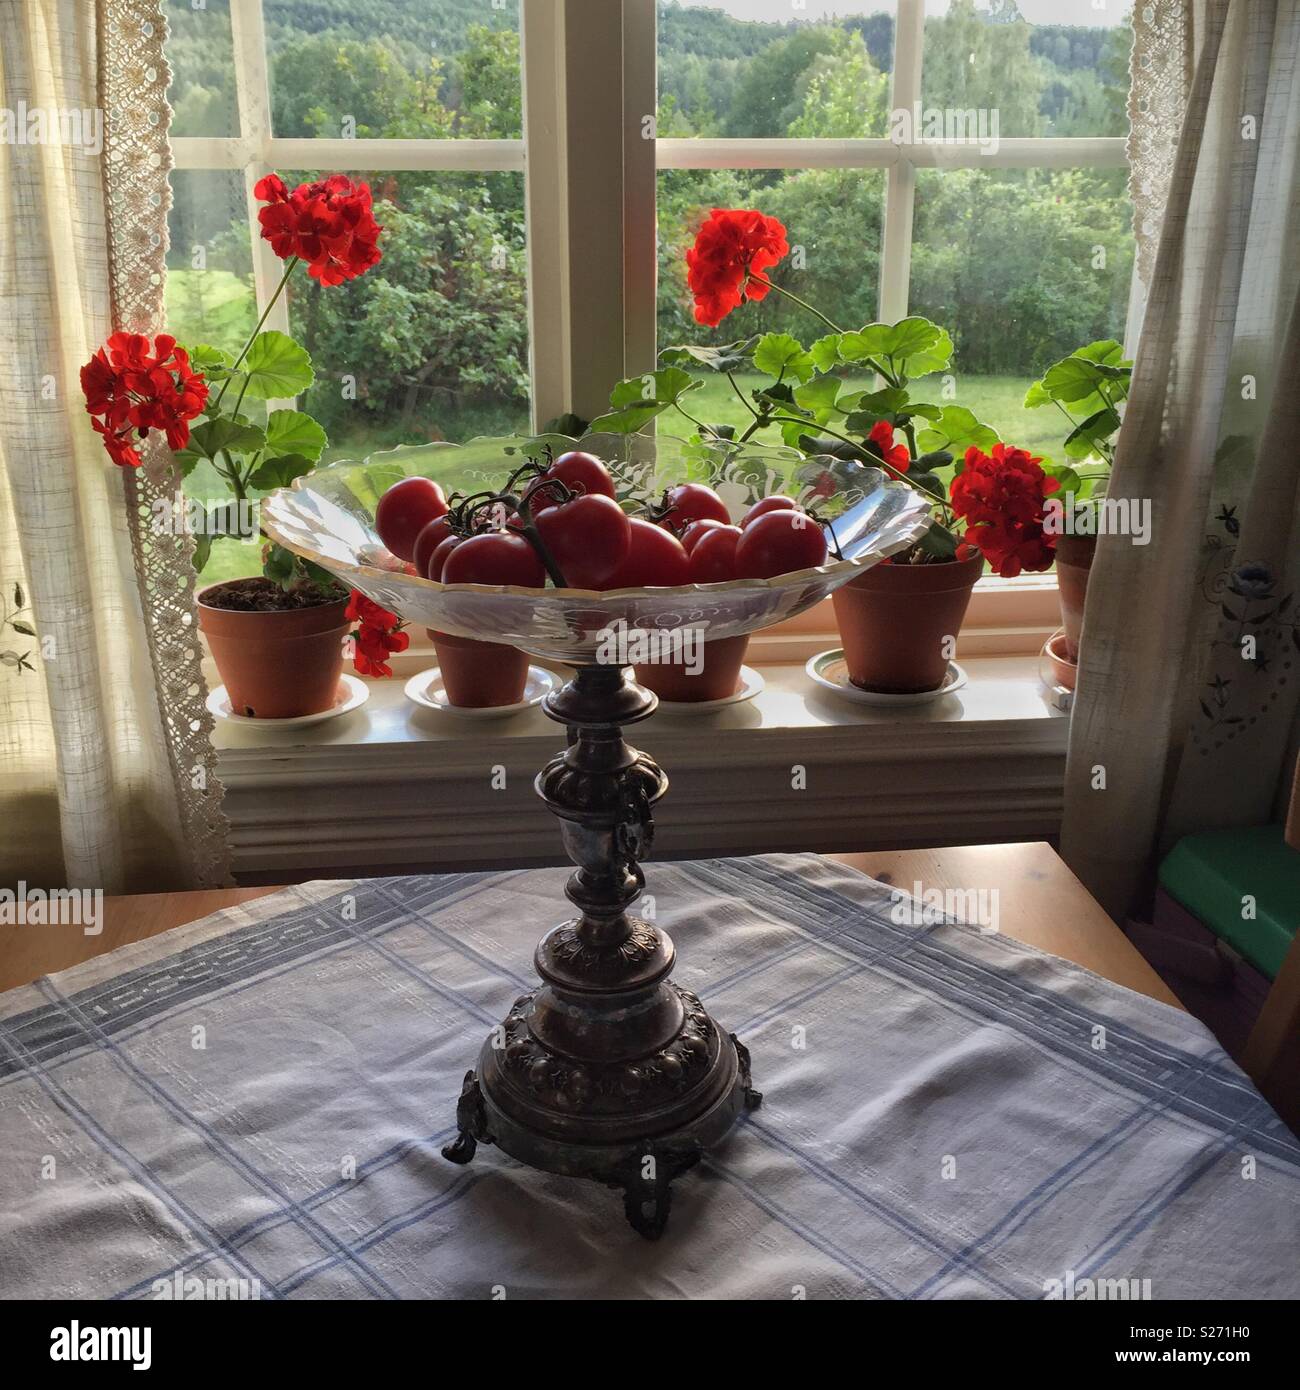 Appena raccolto i pomodori in una ciotola rossa su un tavolo di legno con una tovaglia. Piscina di fronte a una finestra. Foto Stock